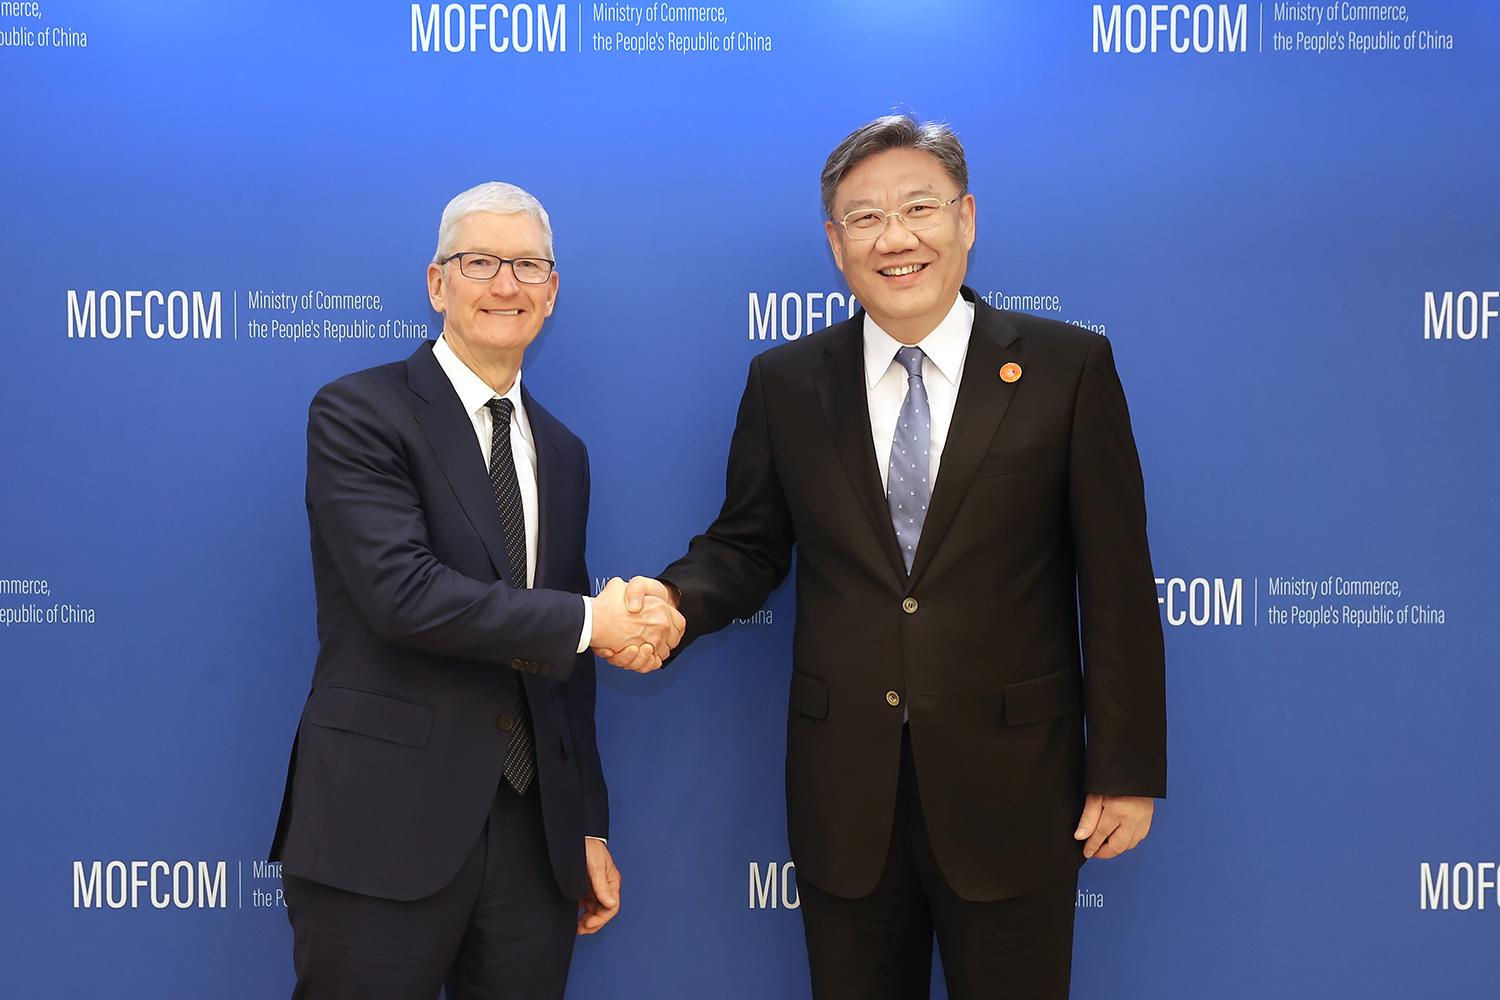 商务部部长王文涛会见苹果公司首席执行官库克